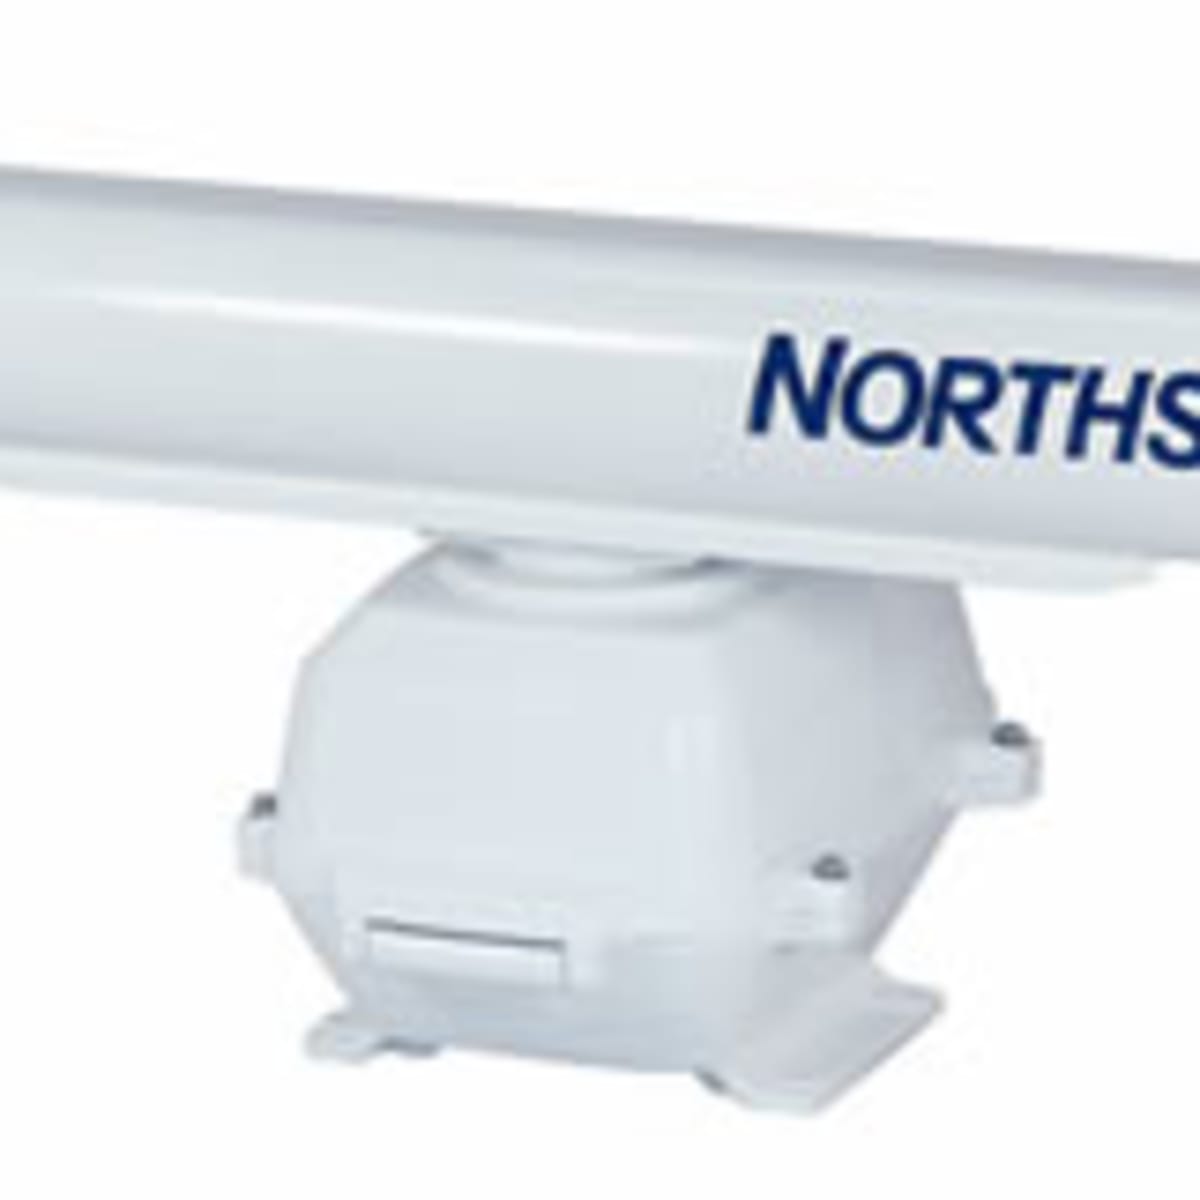 Northstar Radar Unit - Power & Motoryacht